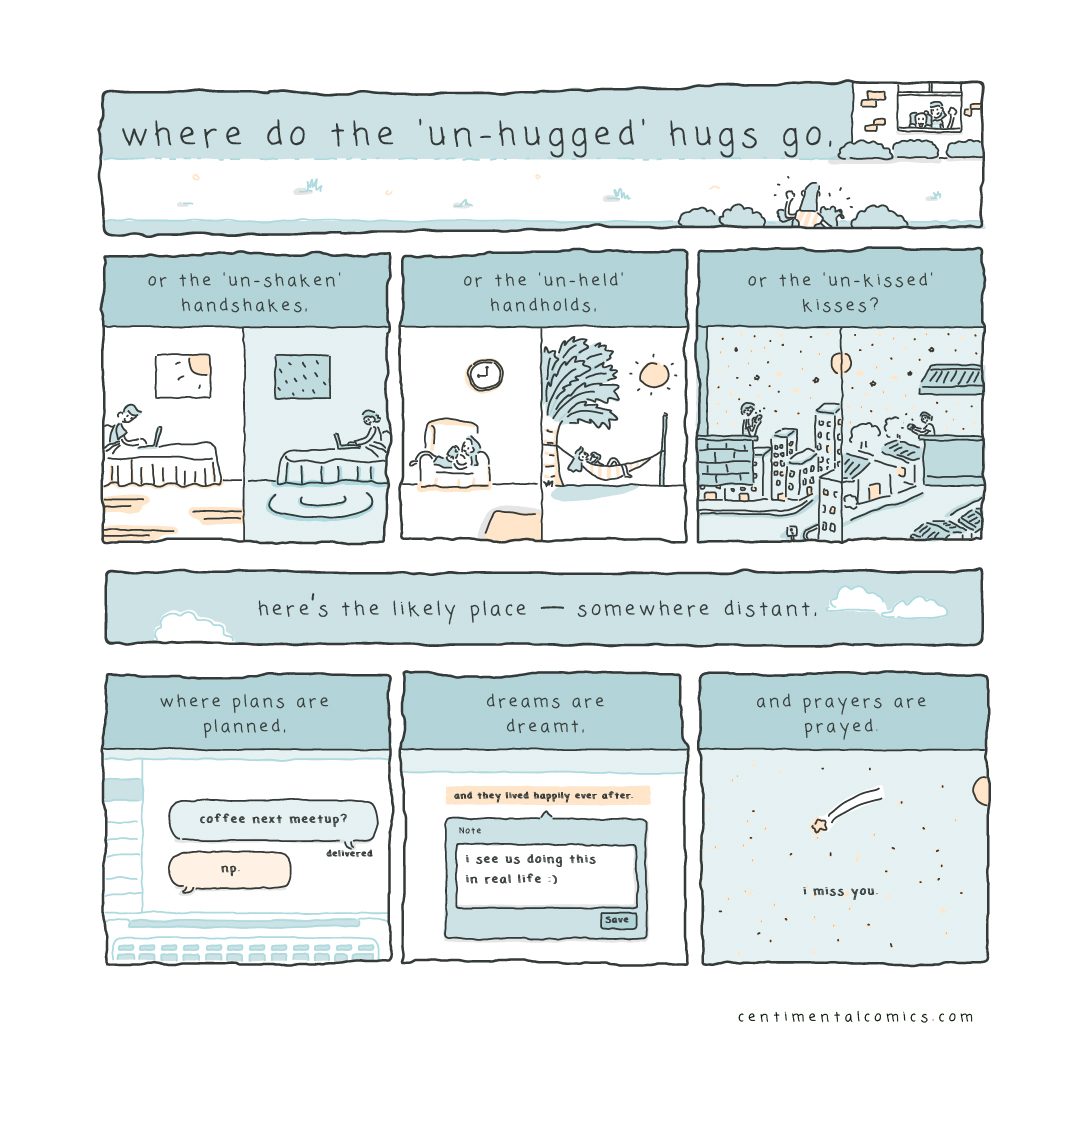 where do the unhugged hugs go